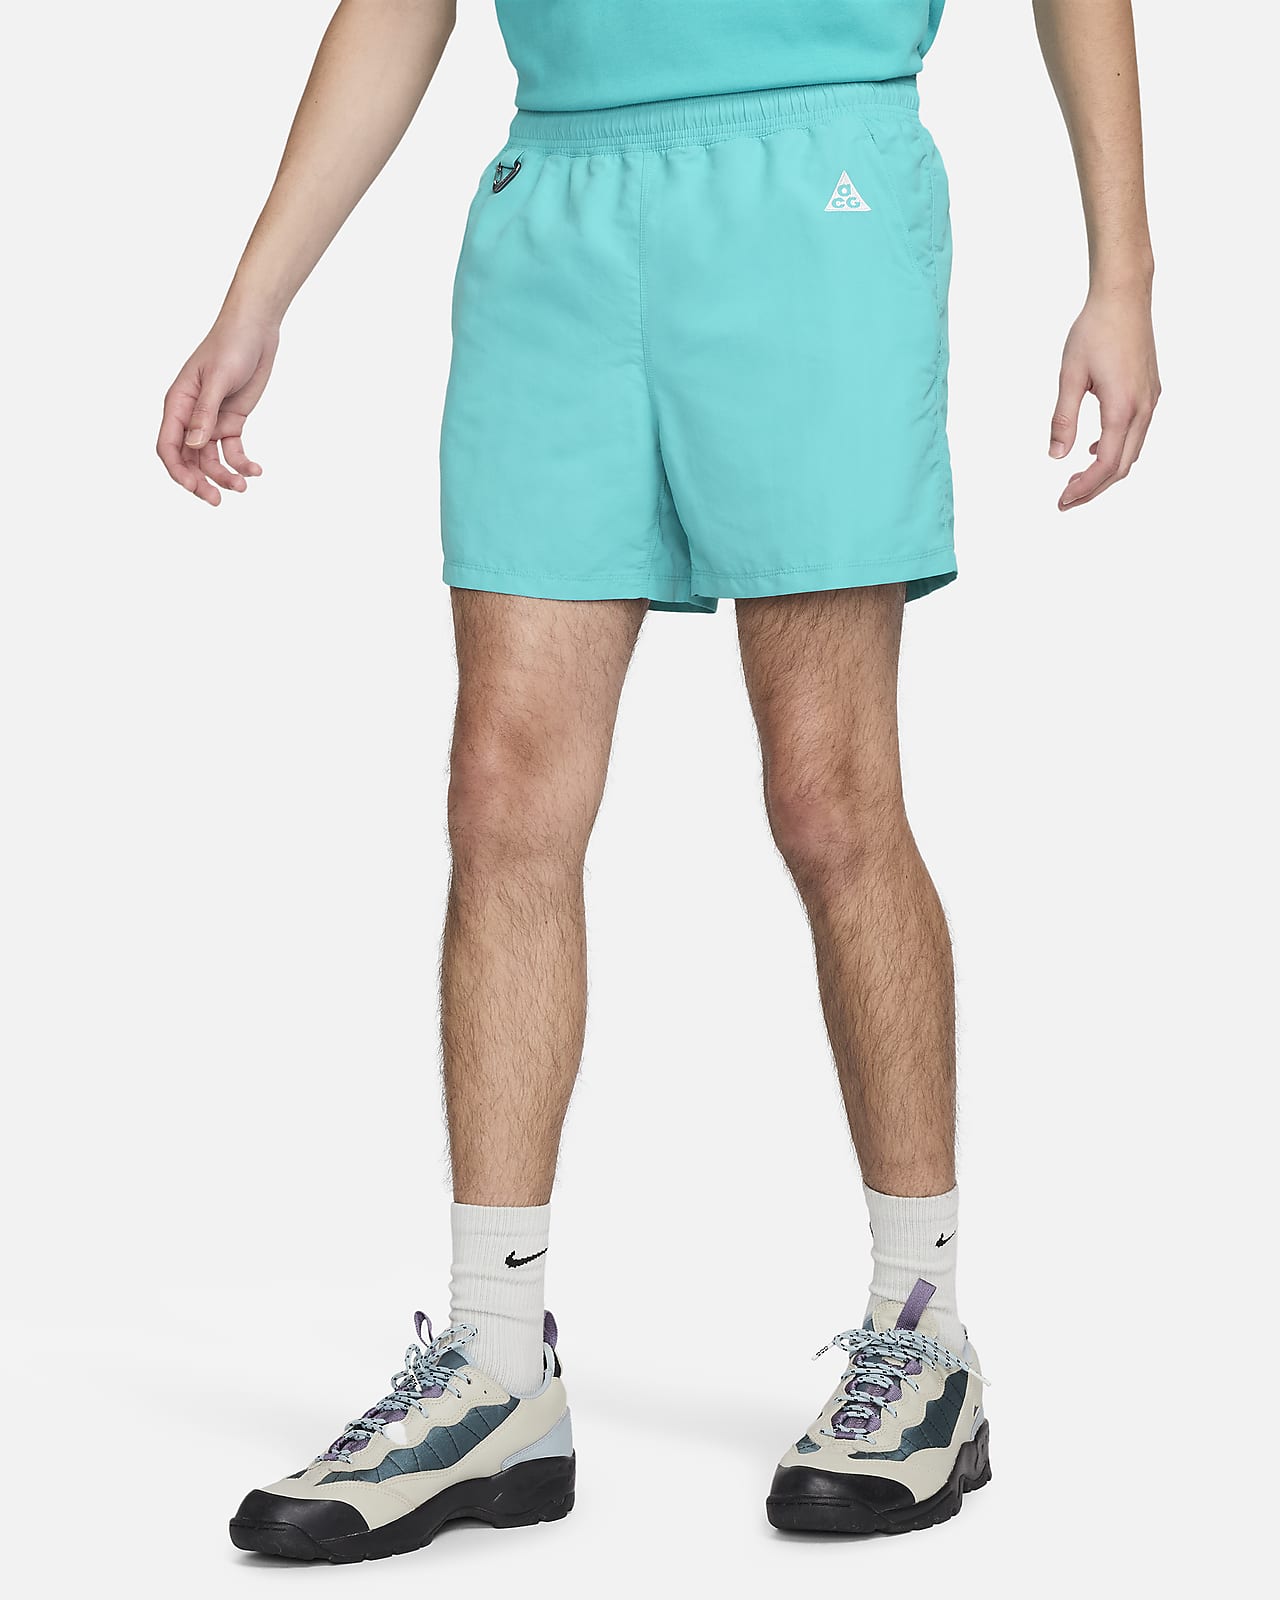 Nike ACG "Reservoir Goat" Pantalón corto - Hombre